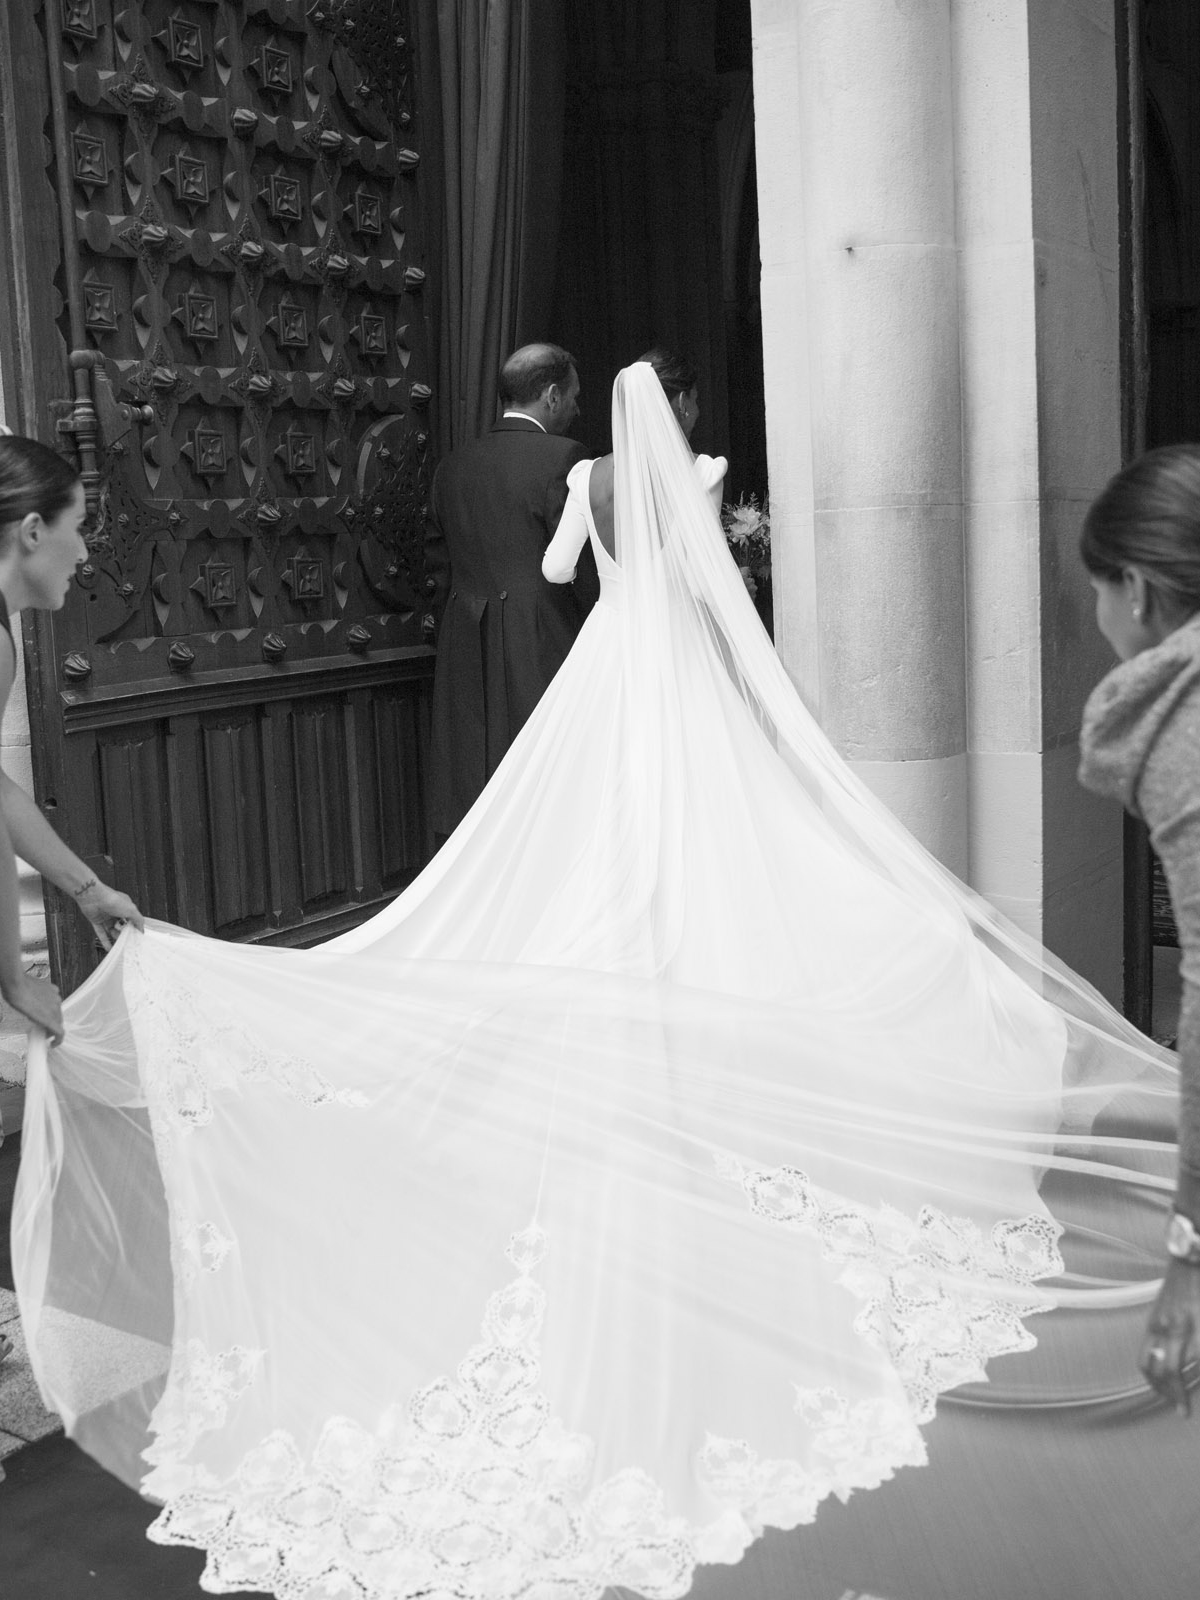 Vestido de novia de tul blanco con velo largo y encaje de novia